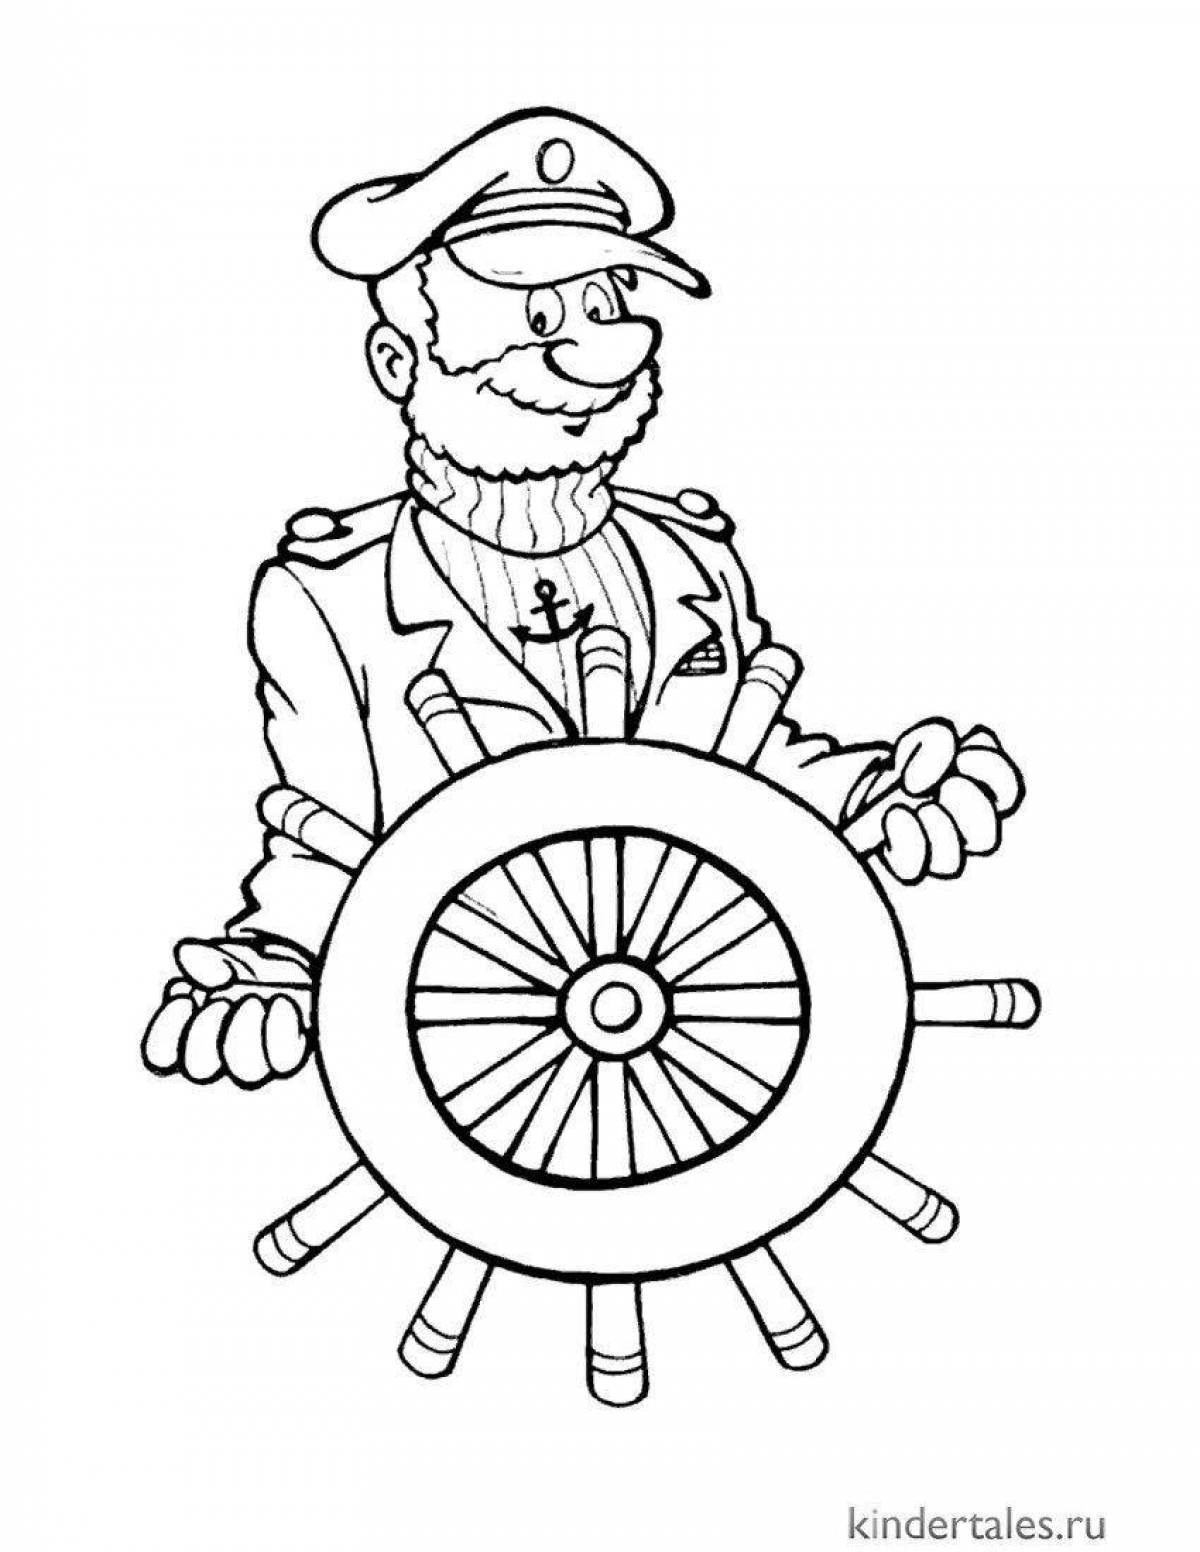 Анимированная раскраска моряк